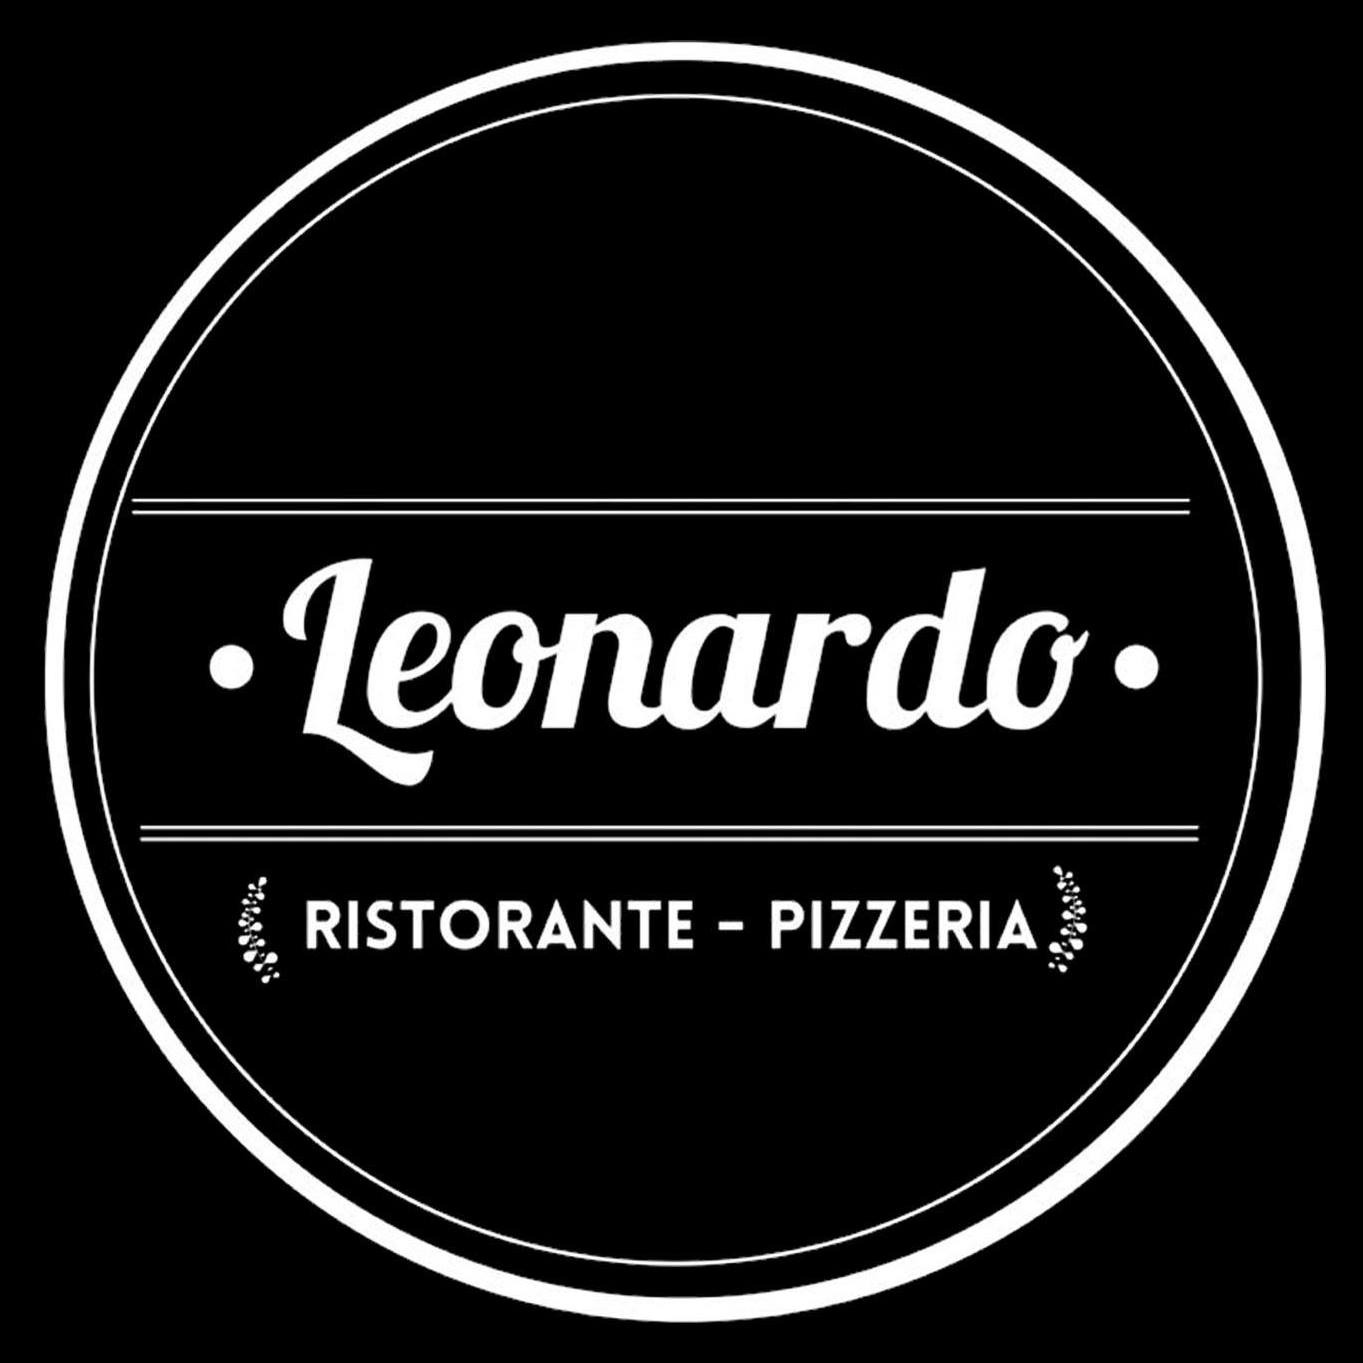 Ristorante Pizzeria Leonardo logo